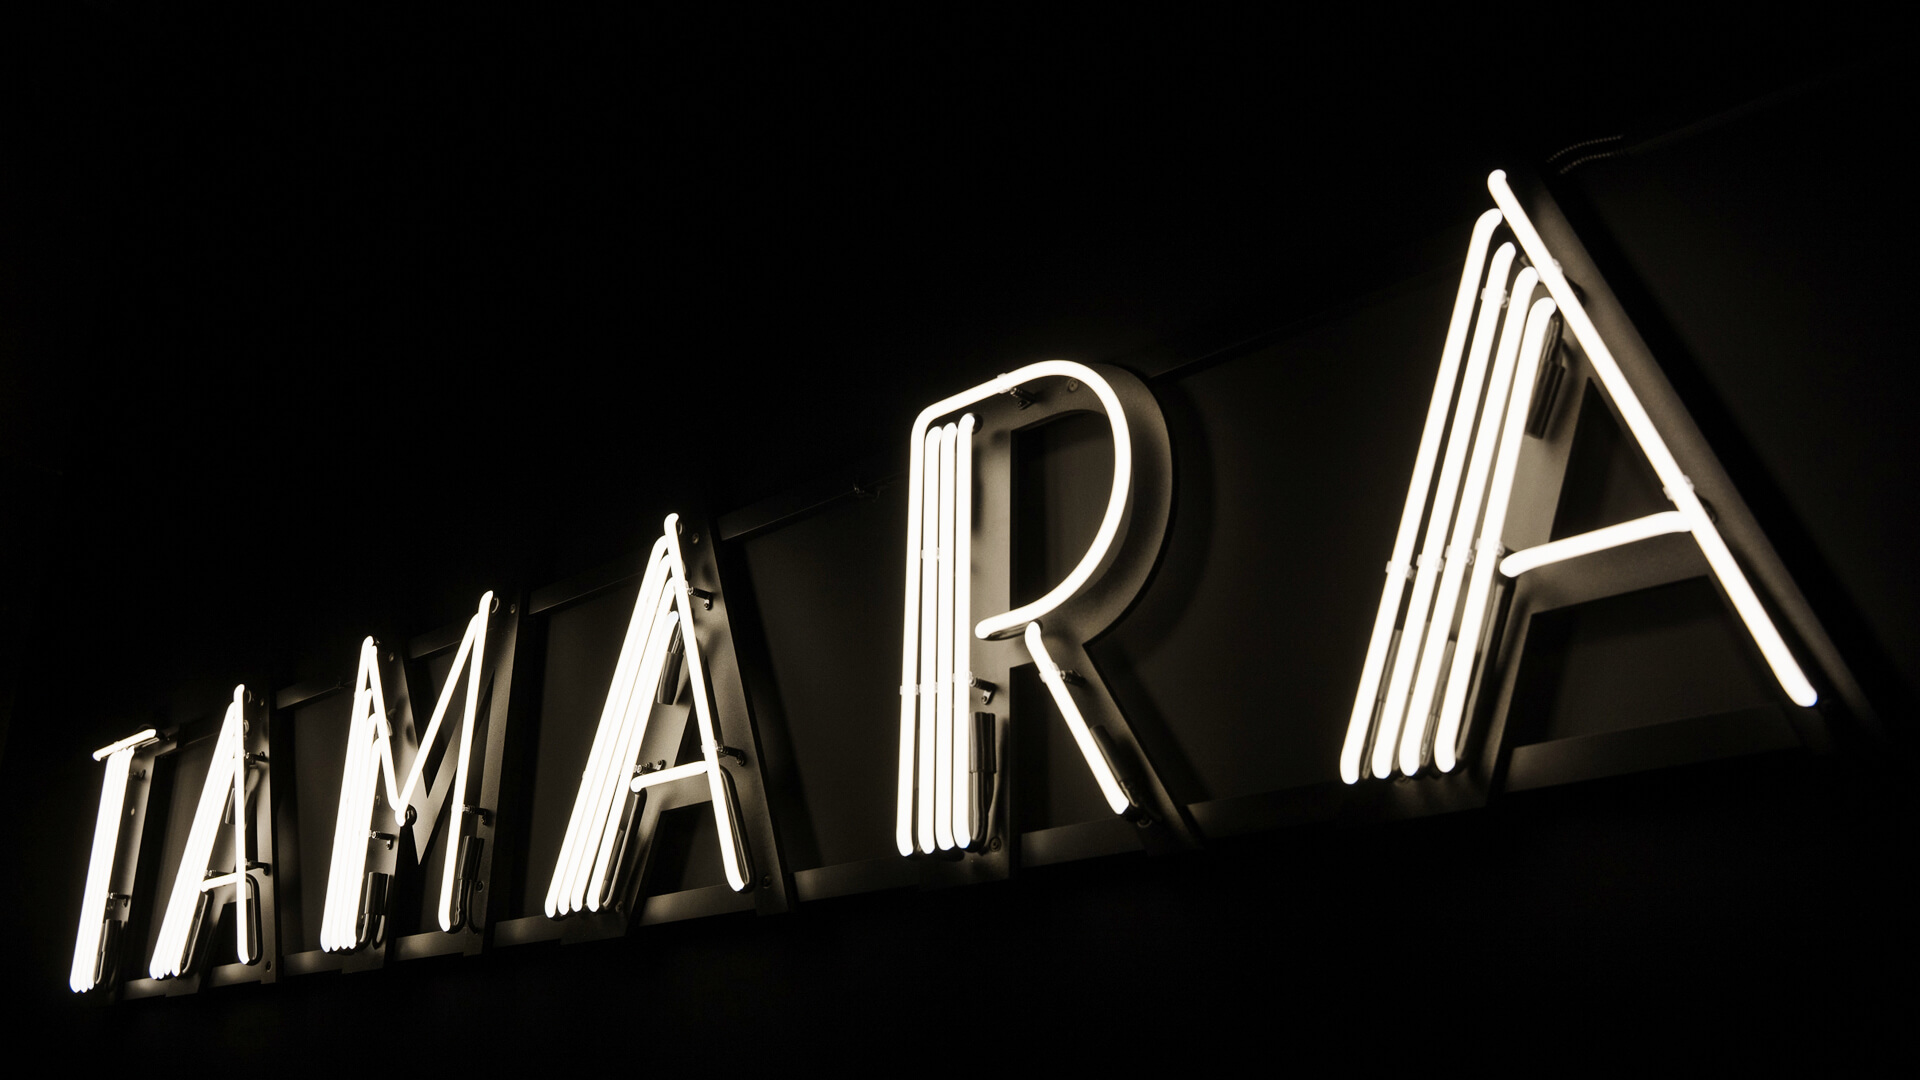 Neon Tamara Lempicka - Weiße neutrale Tamara-Leuchtschrift im Krakauer Museum